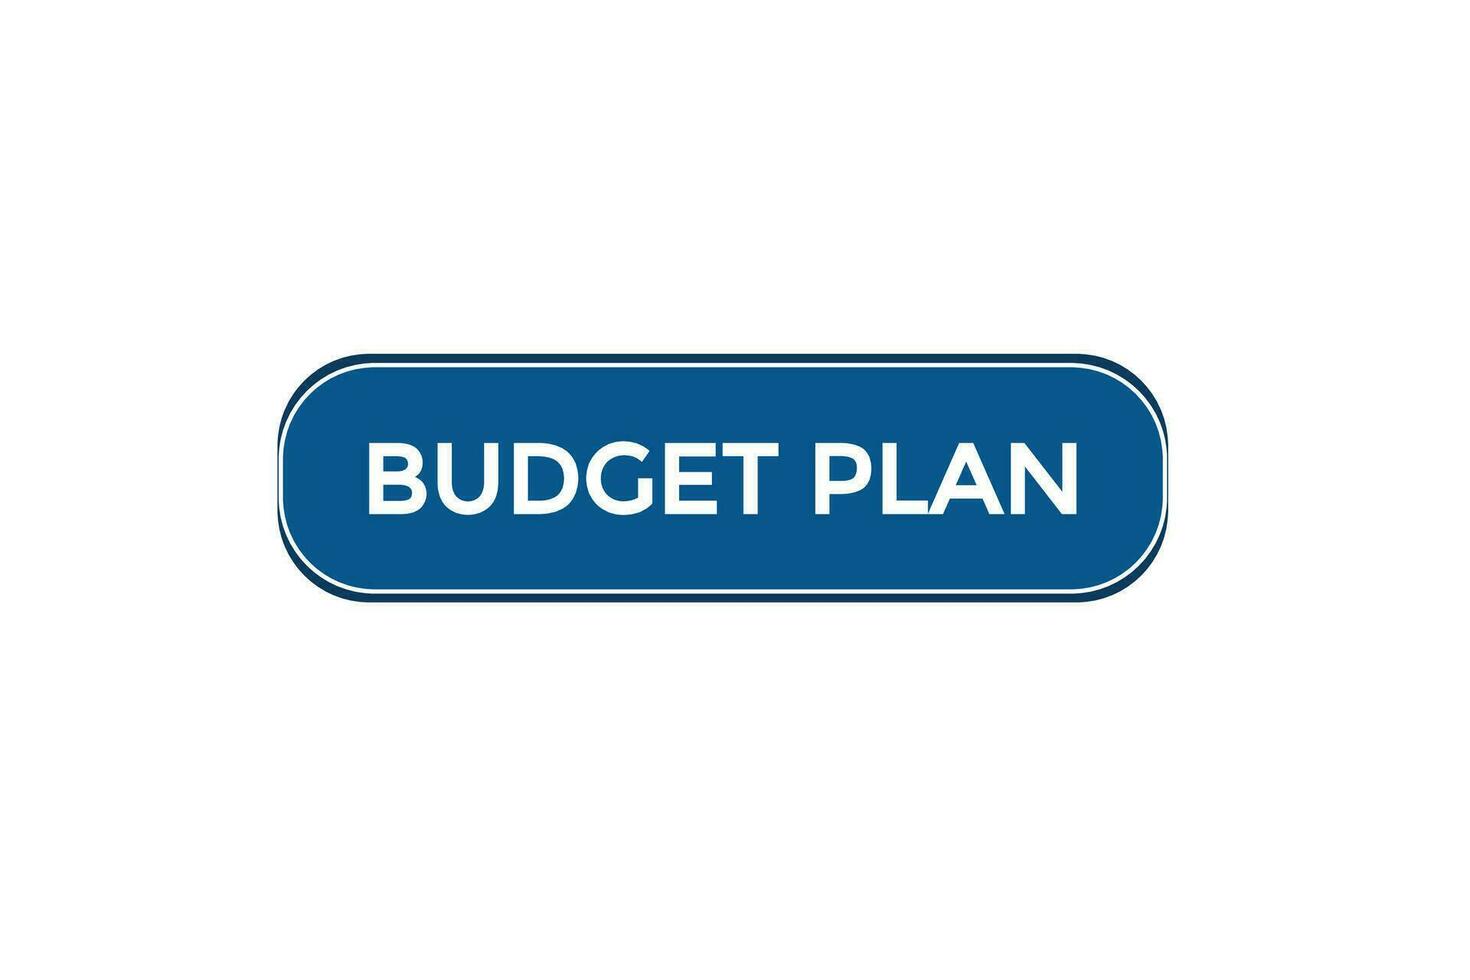 nuevo presupuesto plan moderno, sitio web, hacer clic botón, nivel, firmar, discurso, burbuja bandera, vector